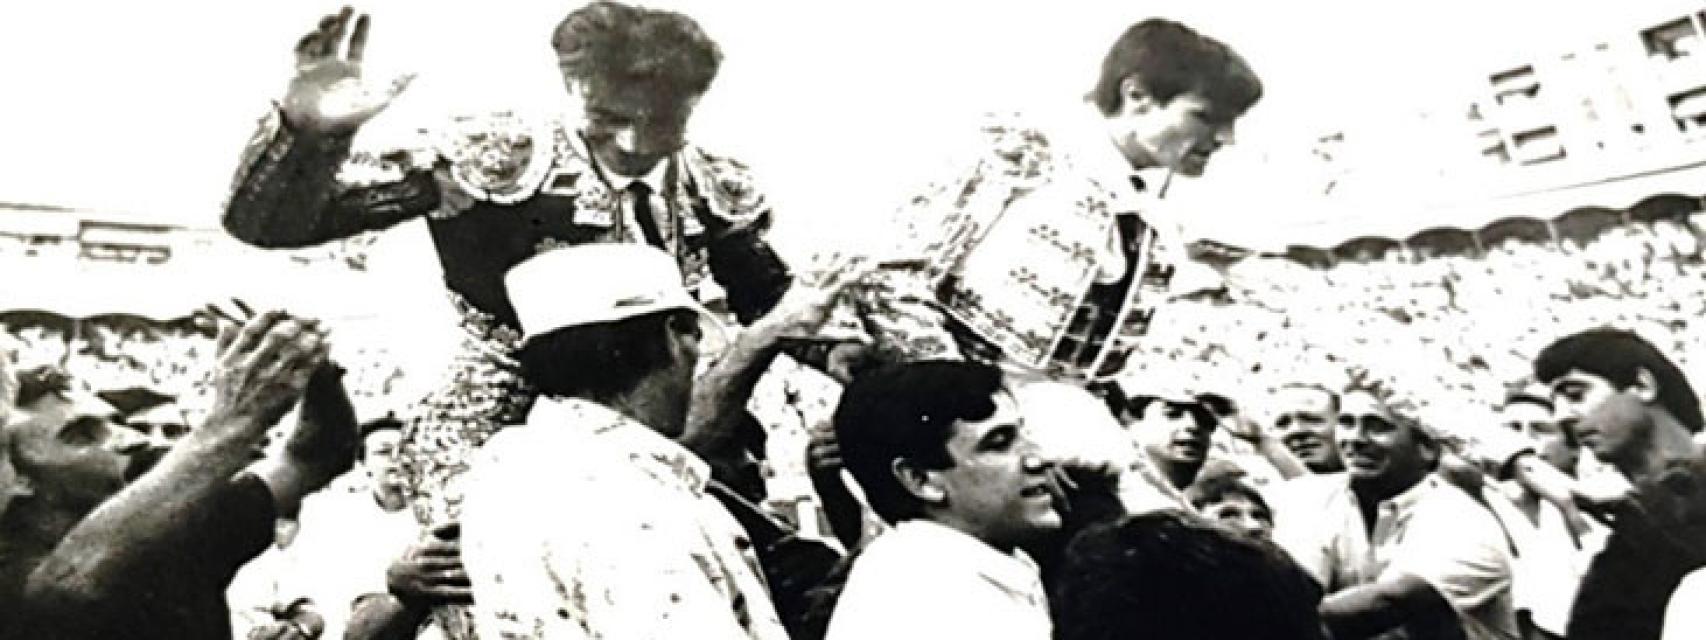 Roberto y Espartaco saliendo a hombros del coso de Linares en 1990